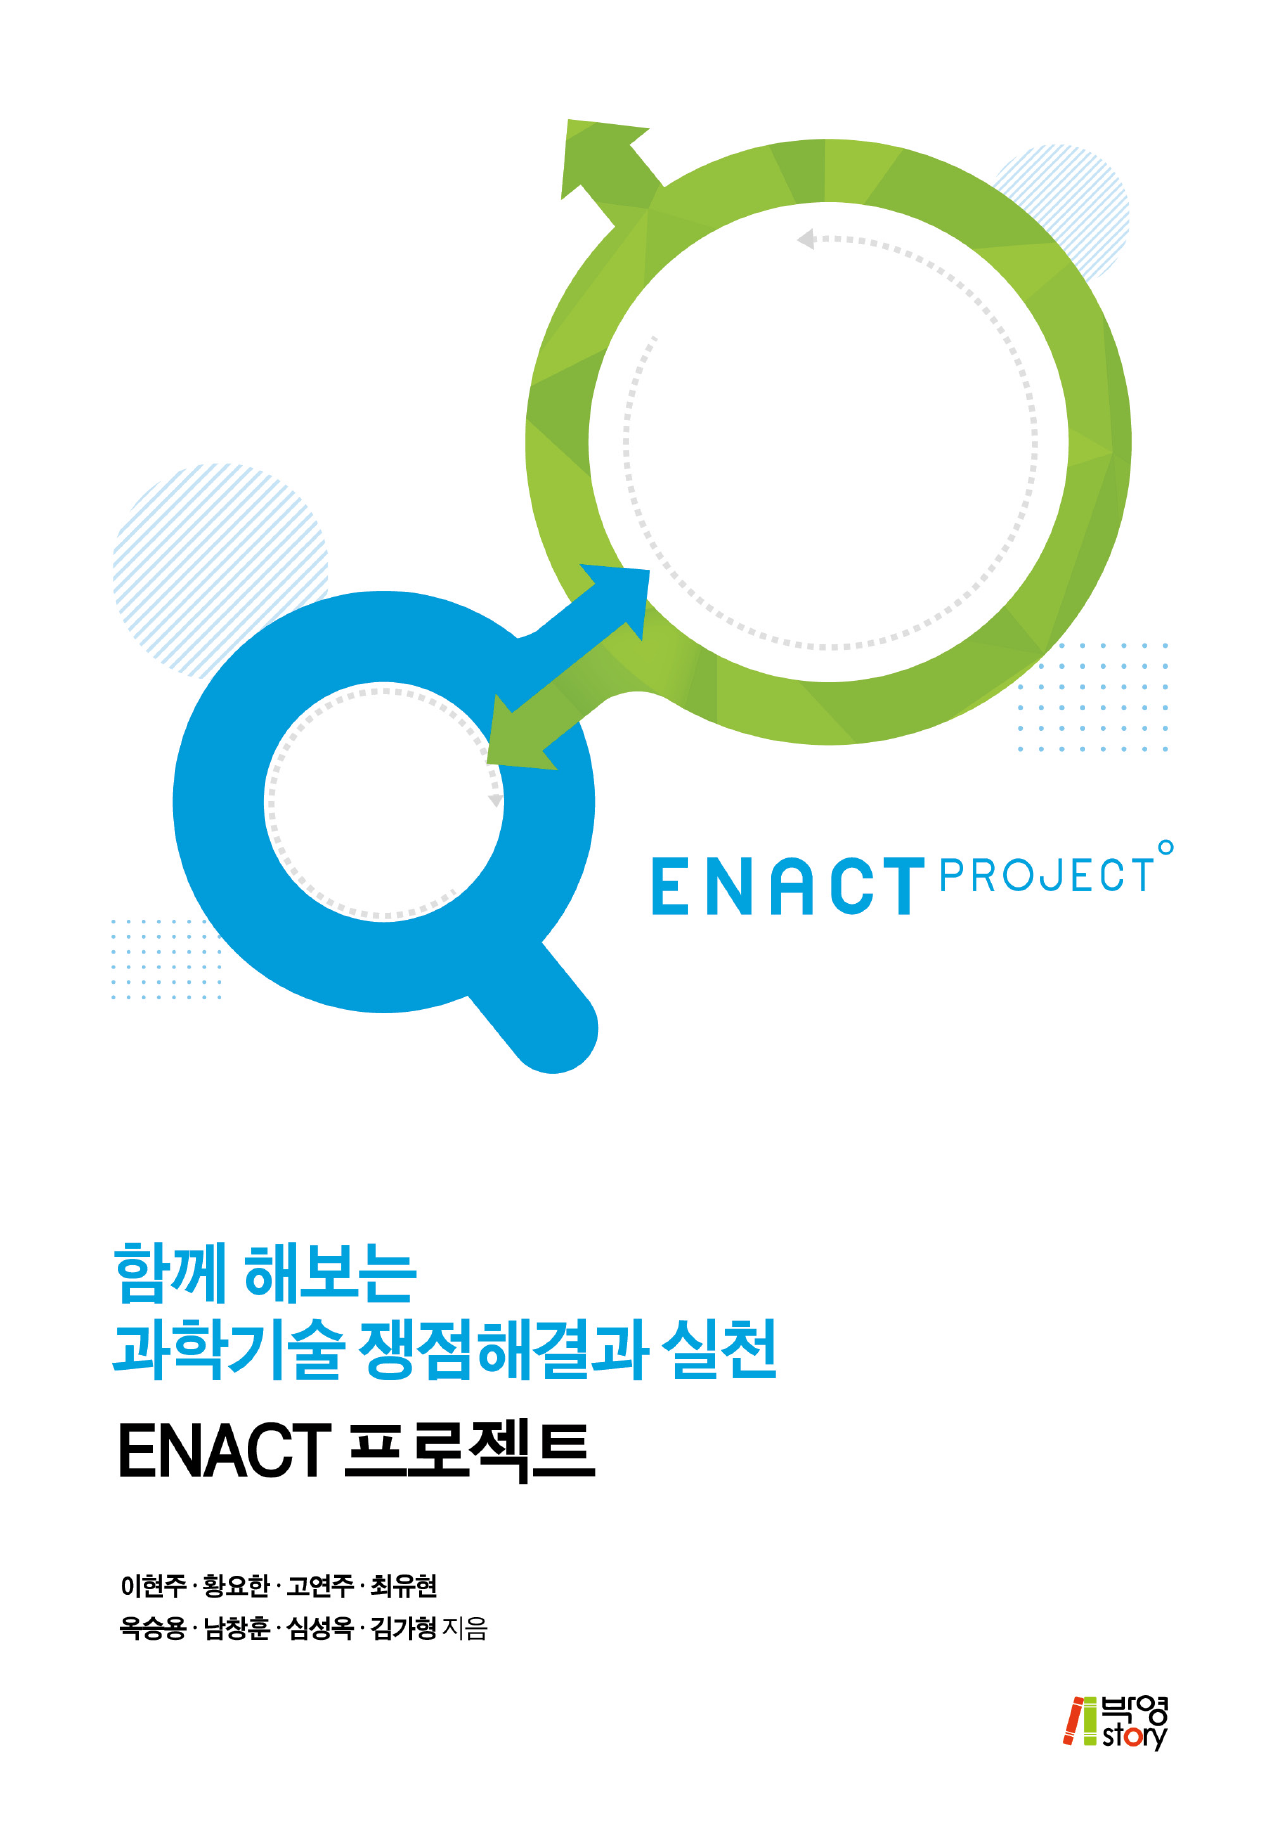 함께 해보는 과학기술 쟁점해결과 실천: ENACT 프로젝트